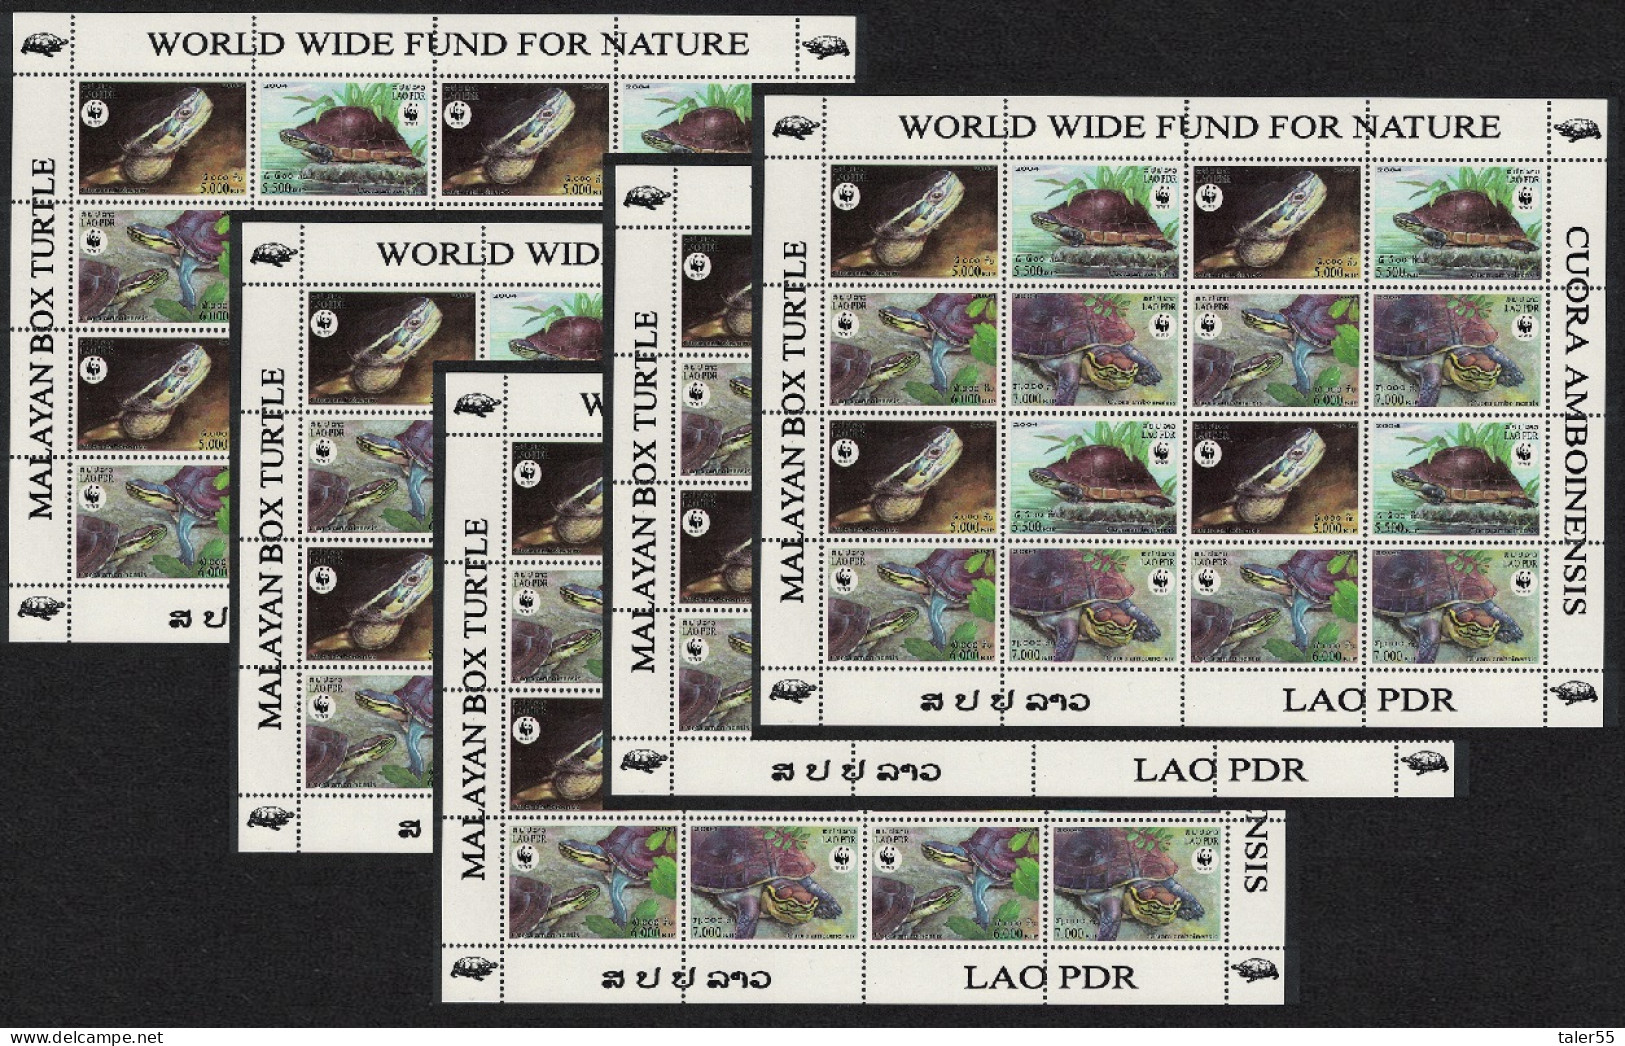 Laos WWF Malayan Box Turtle 5 Sheetlets [A] 2004 MNH SG#1892-1895 MI#1927-1930 Sc#1625 A-d - Laos